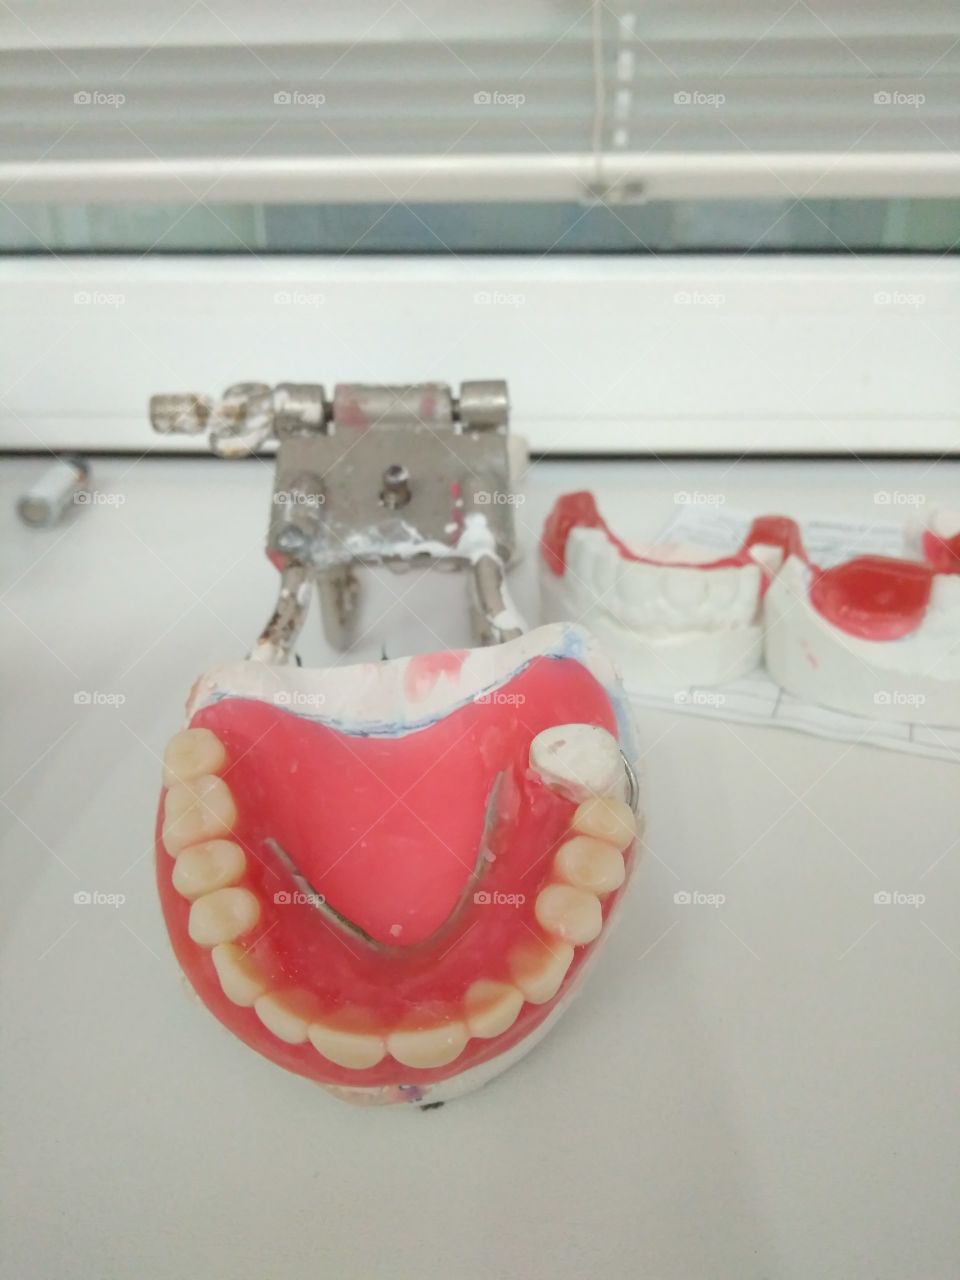 Wax dentures